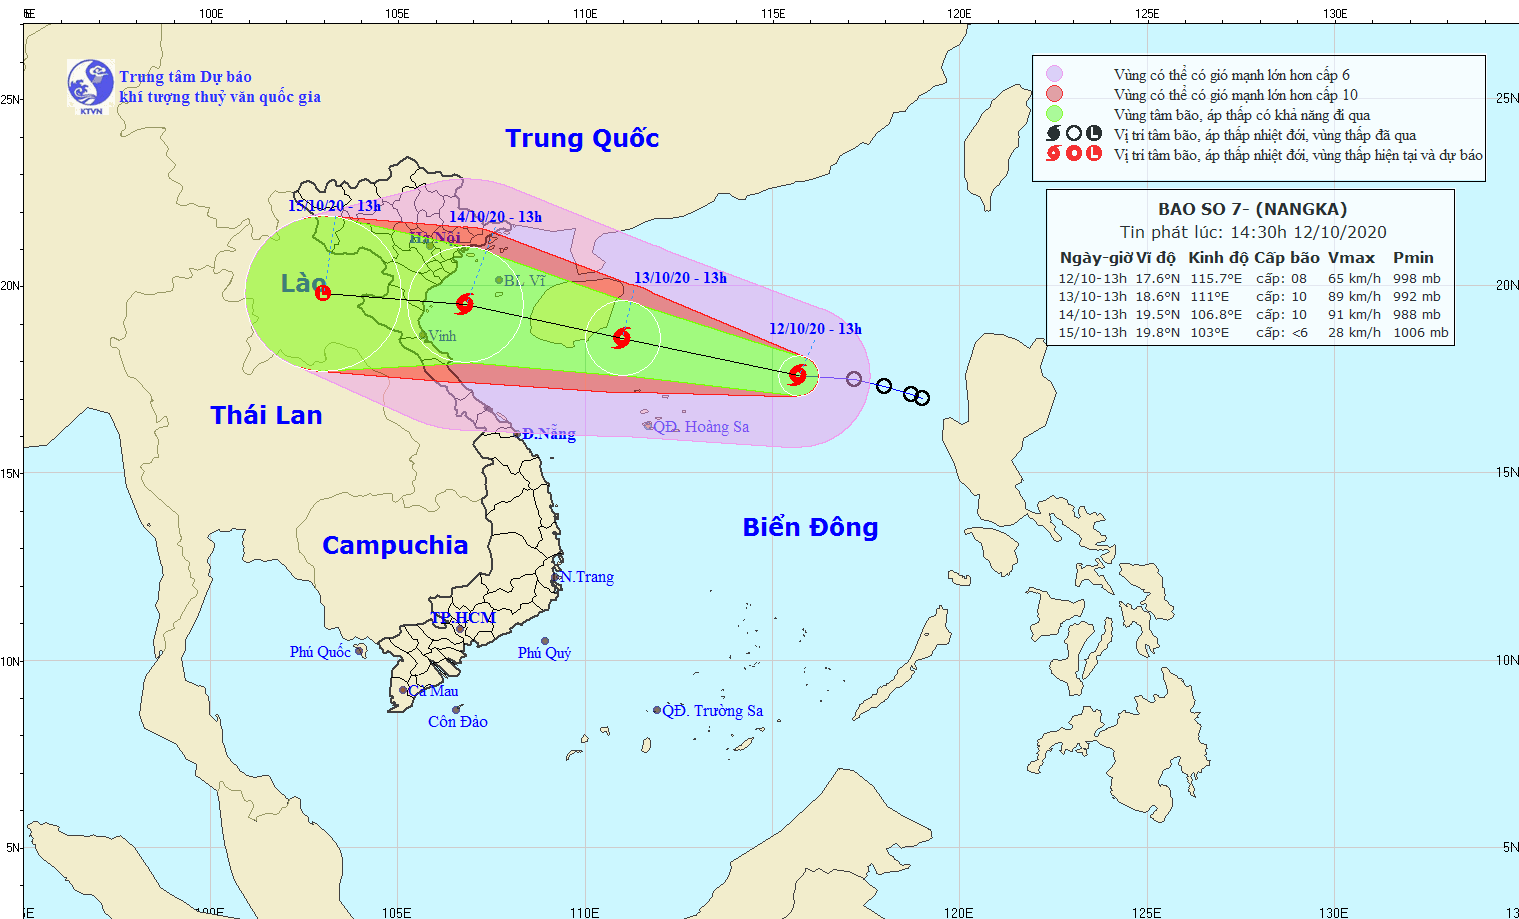 Tin bão trên biển Đông (cơn bão số 7) gió giật cấp 10